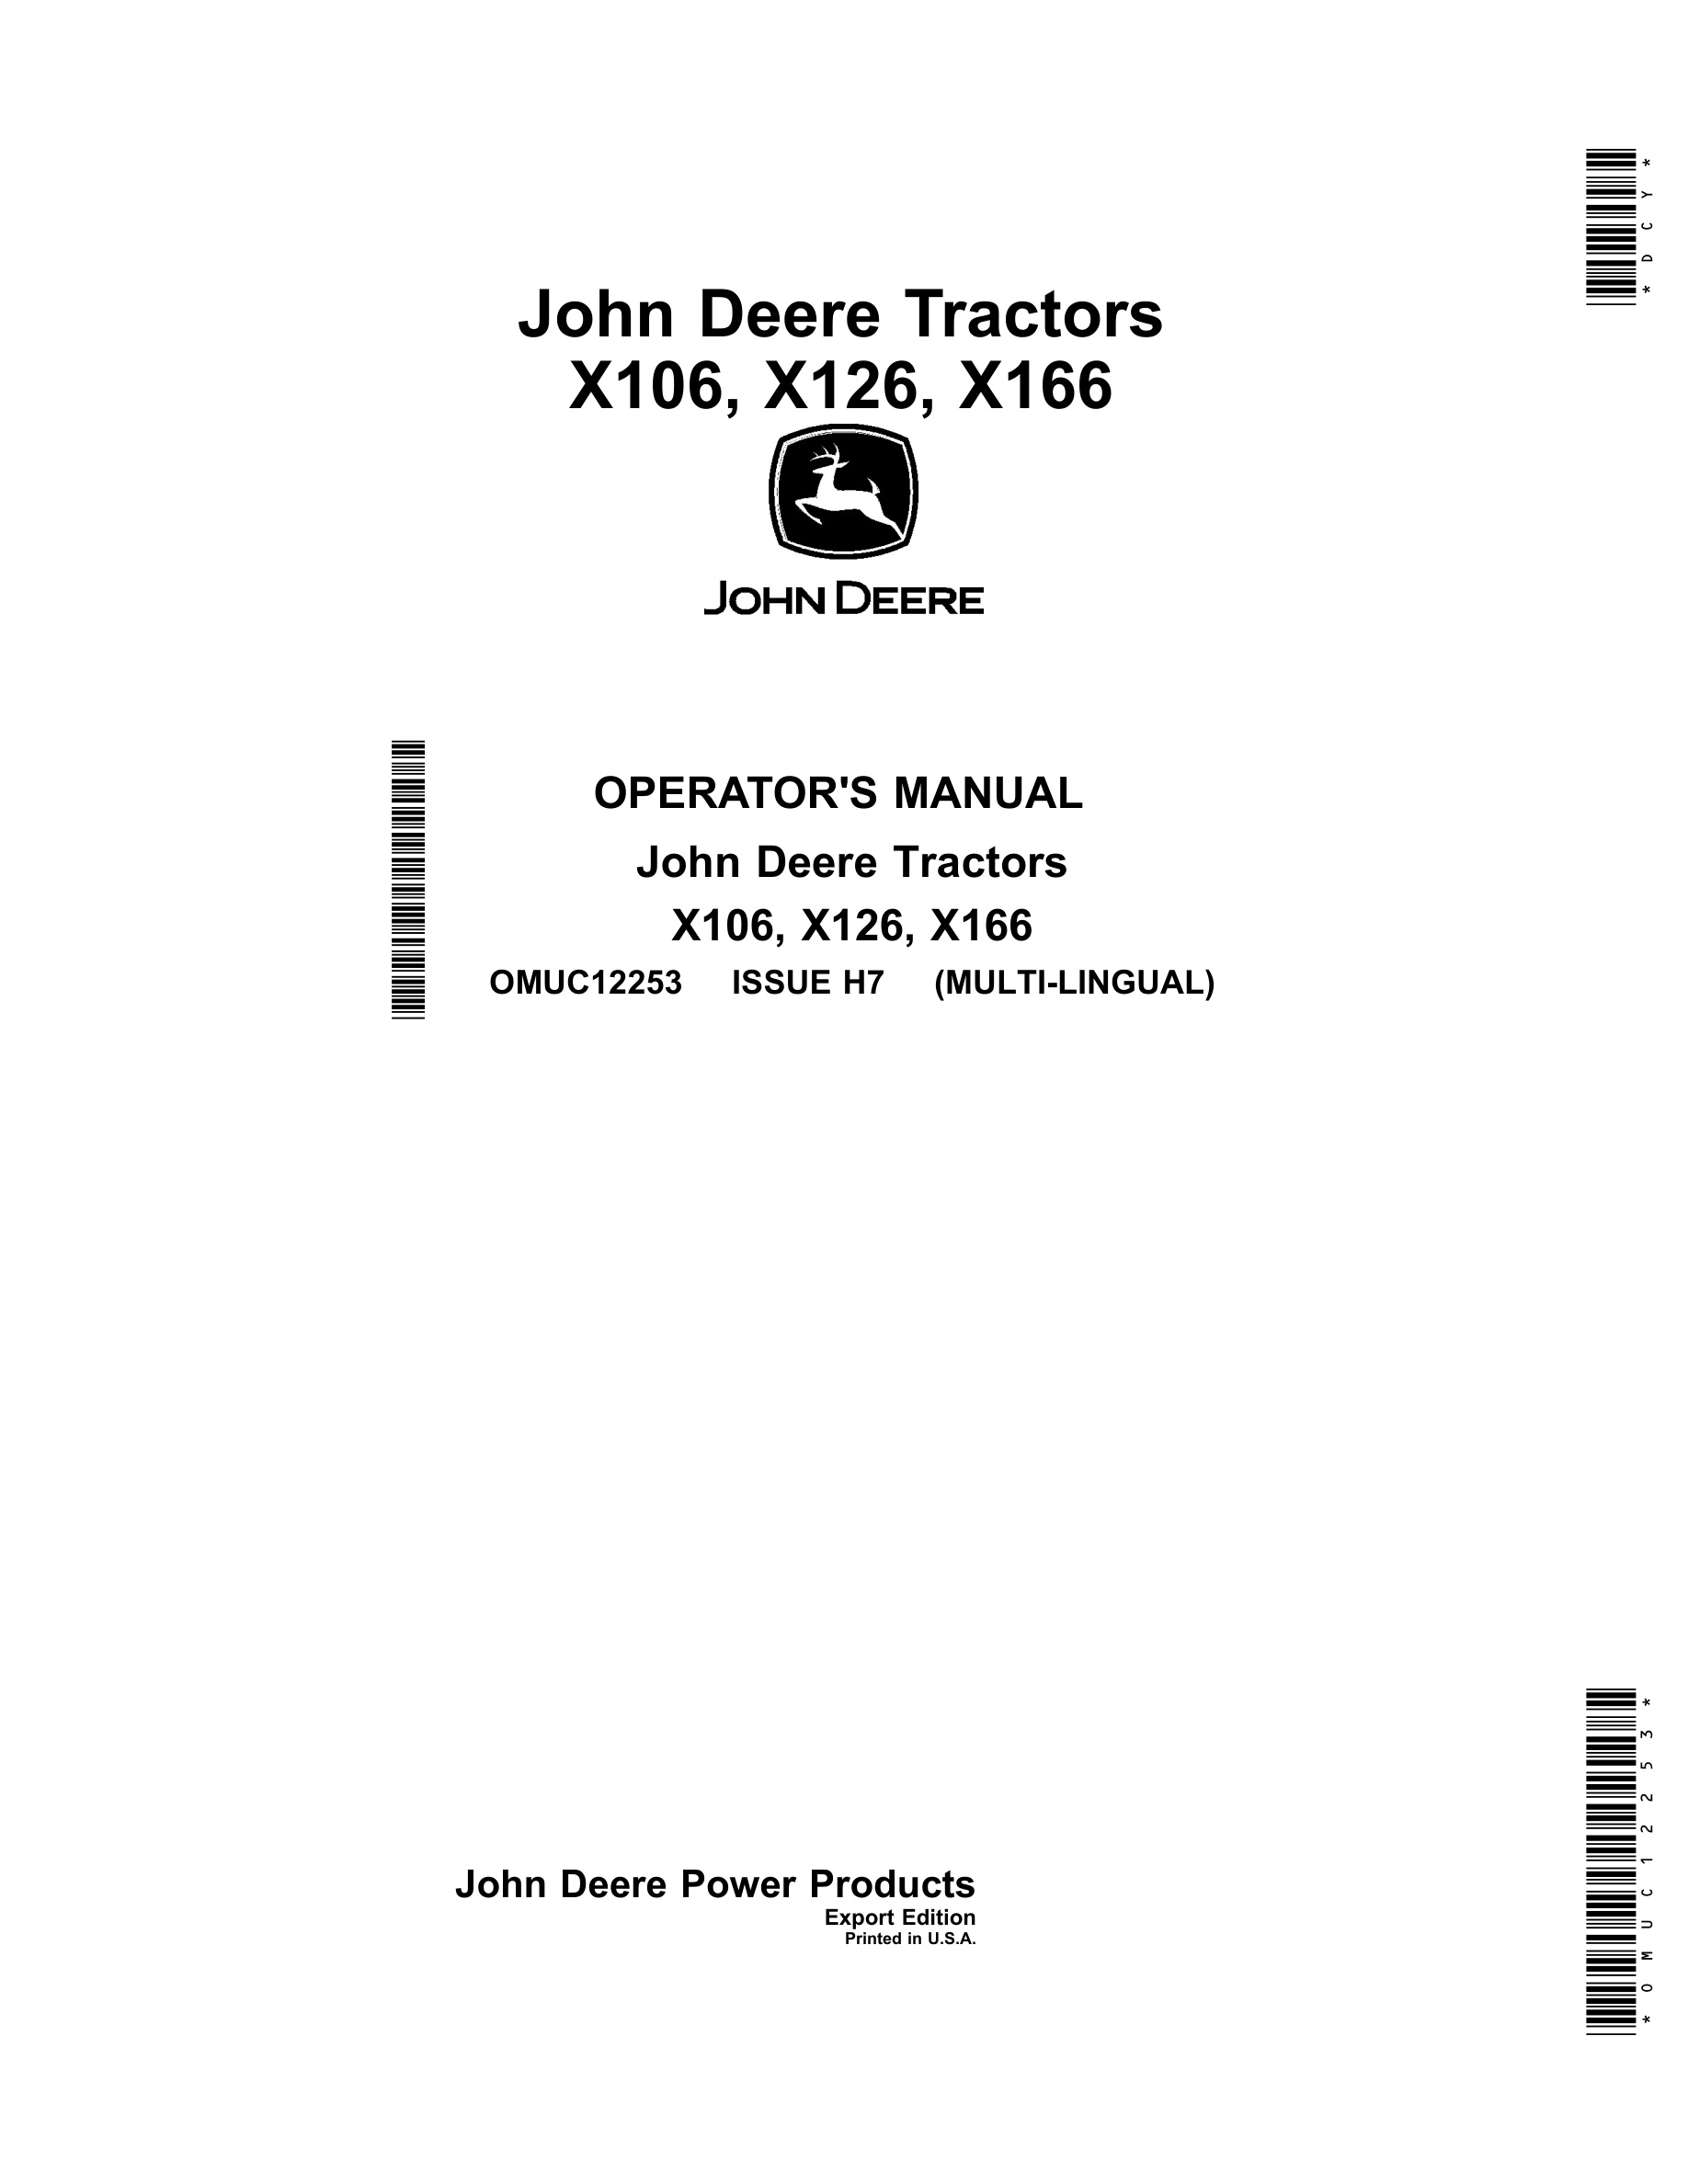 John Deere X106, X126, X166 Tractors Operator Manuals OMUC12253-1